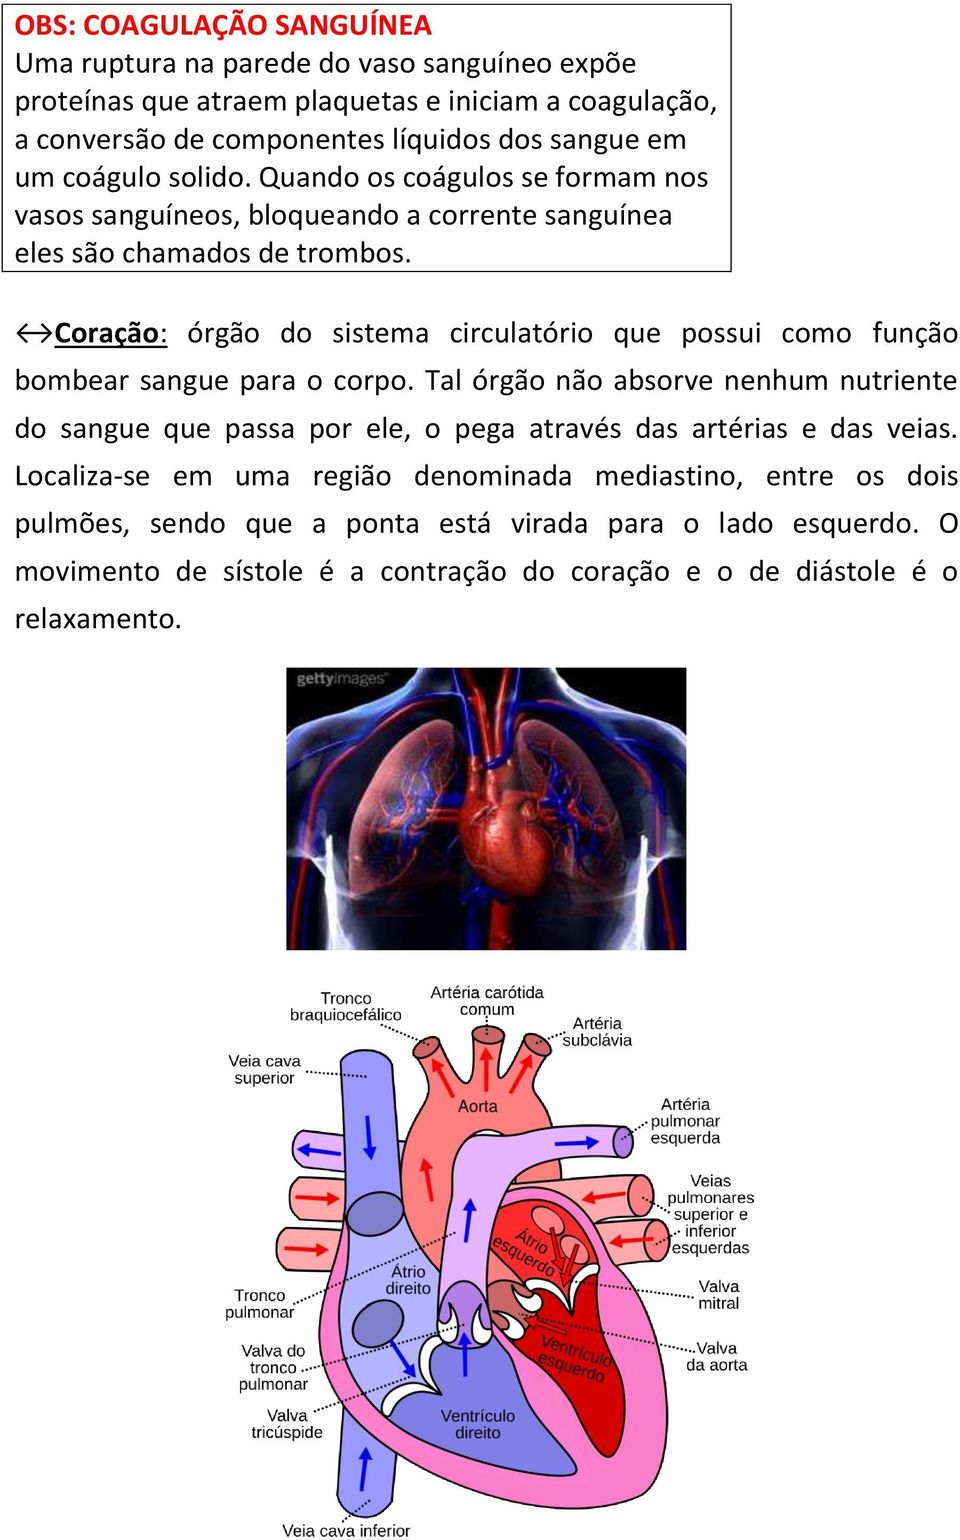 Coração: órgão do sistema circulatório que possui como função bombear sangue para o corpo.